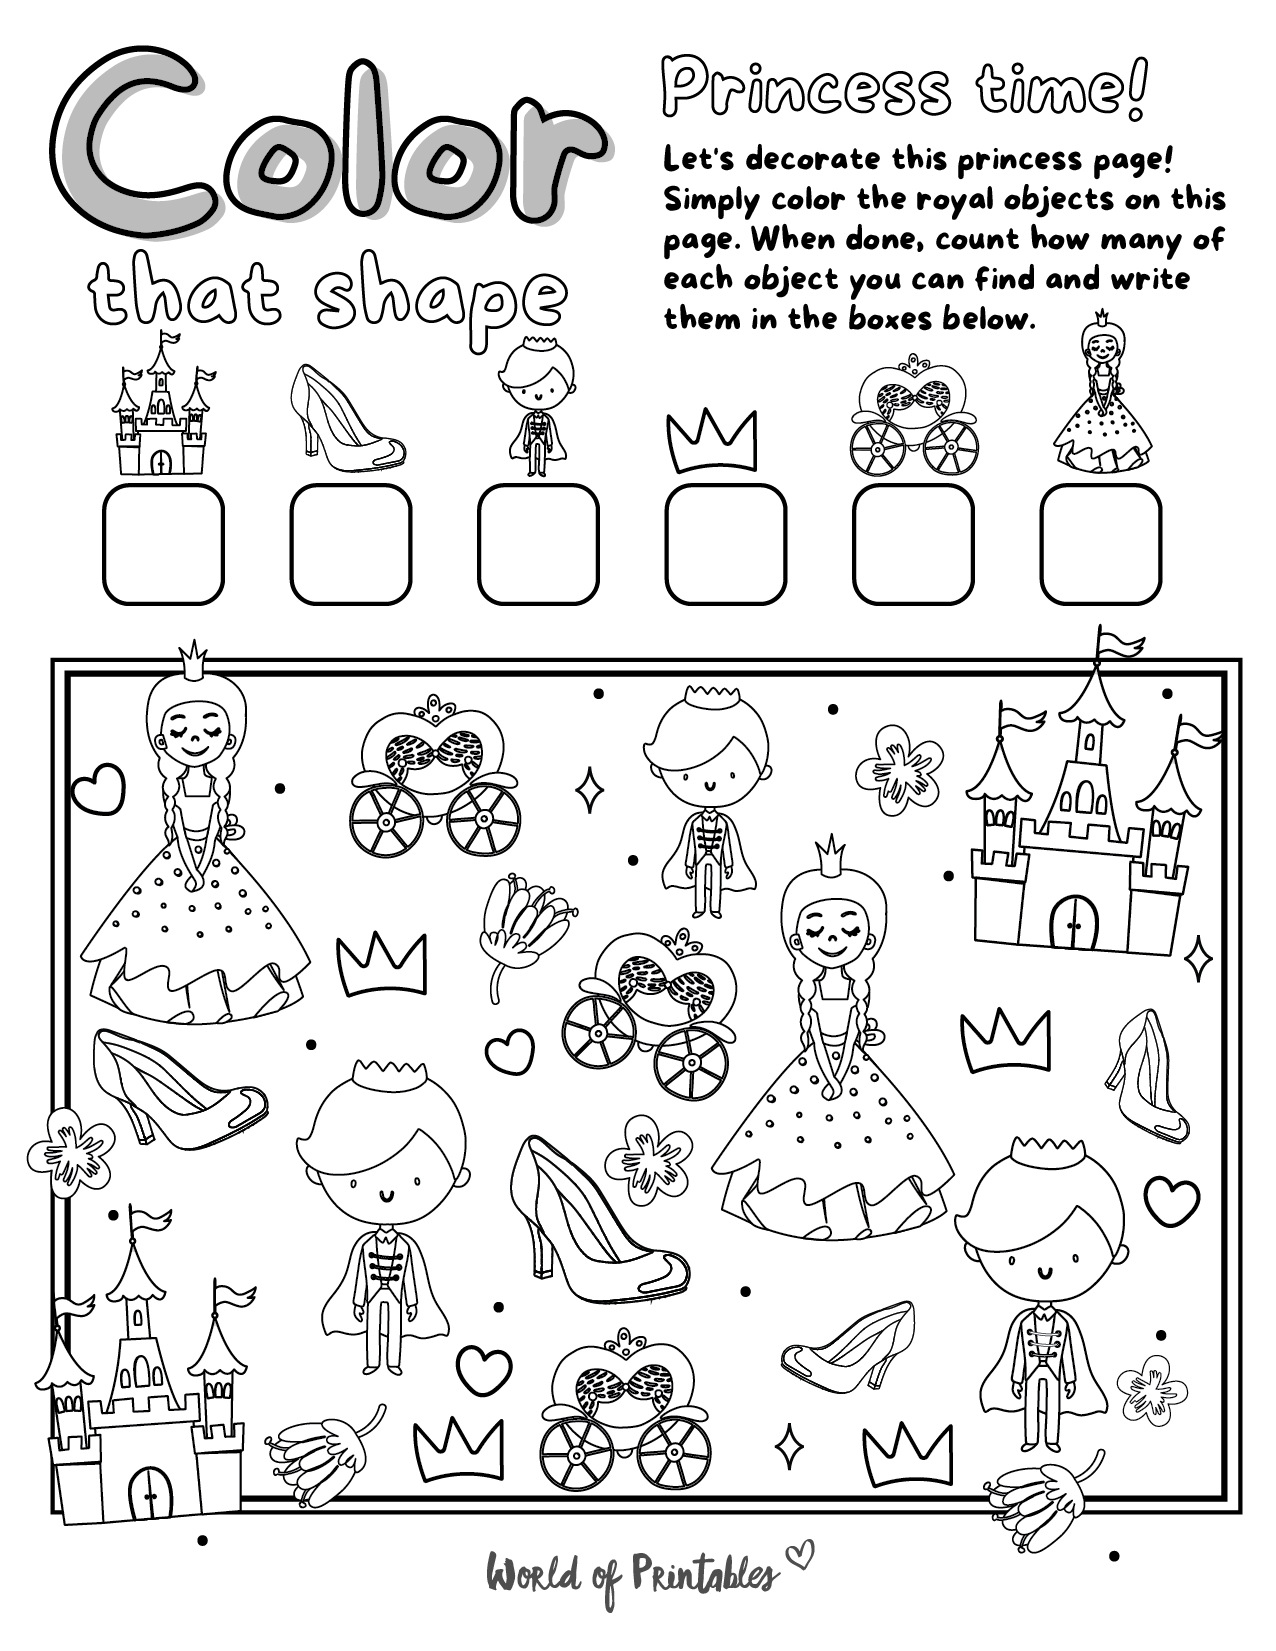 Free Printable I Spy Princess Coloring Page Game   World of Printables